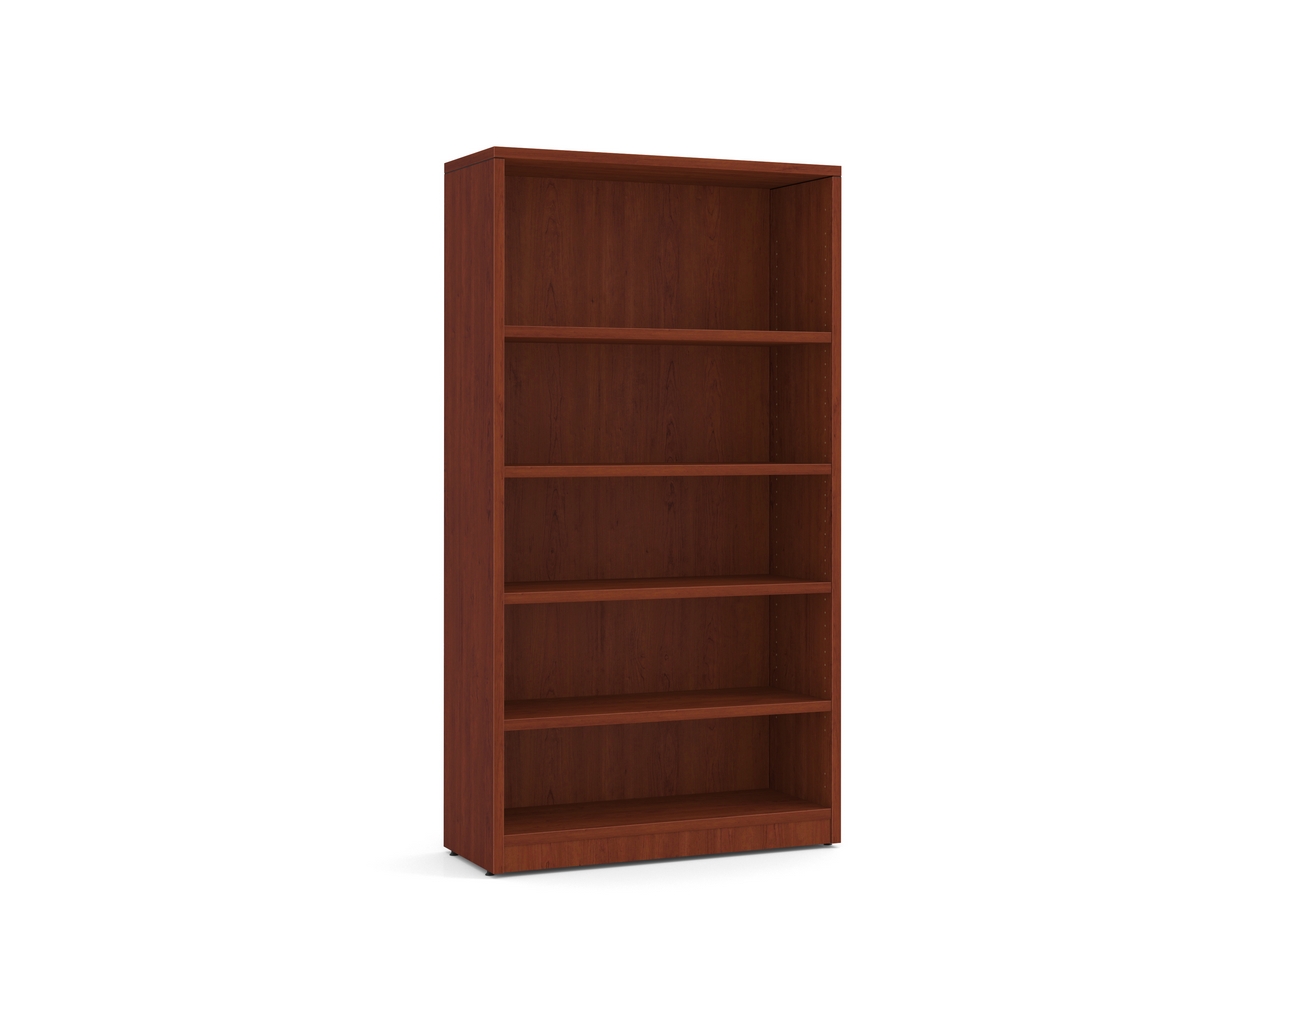 Heavy Duty Bookshelves – 5 Shelf in Cherry